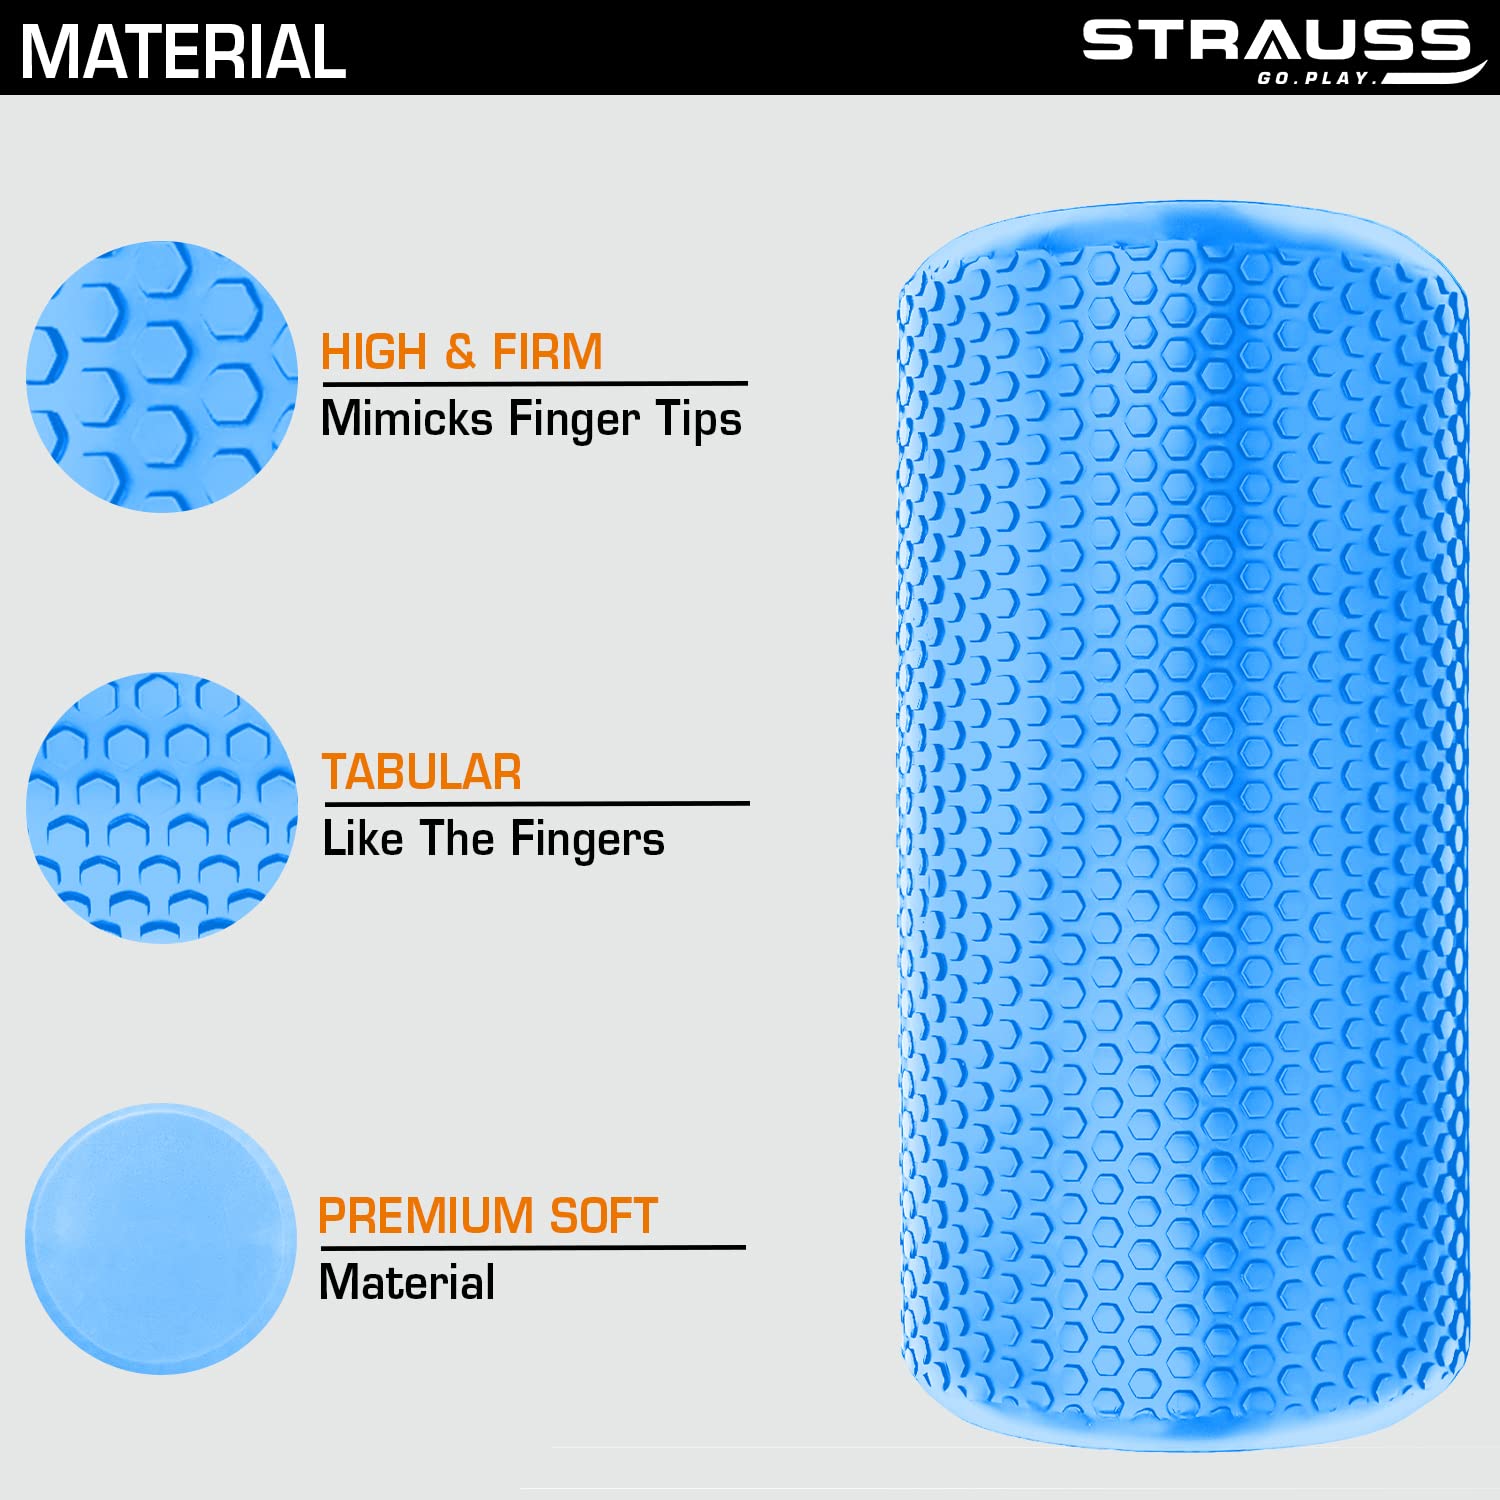 Strauss Yoga Foam Roller, 30 cm, (Blue)